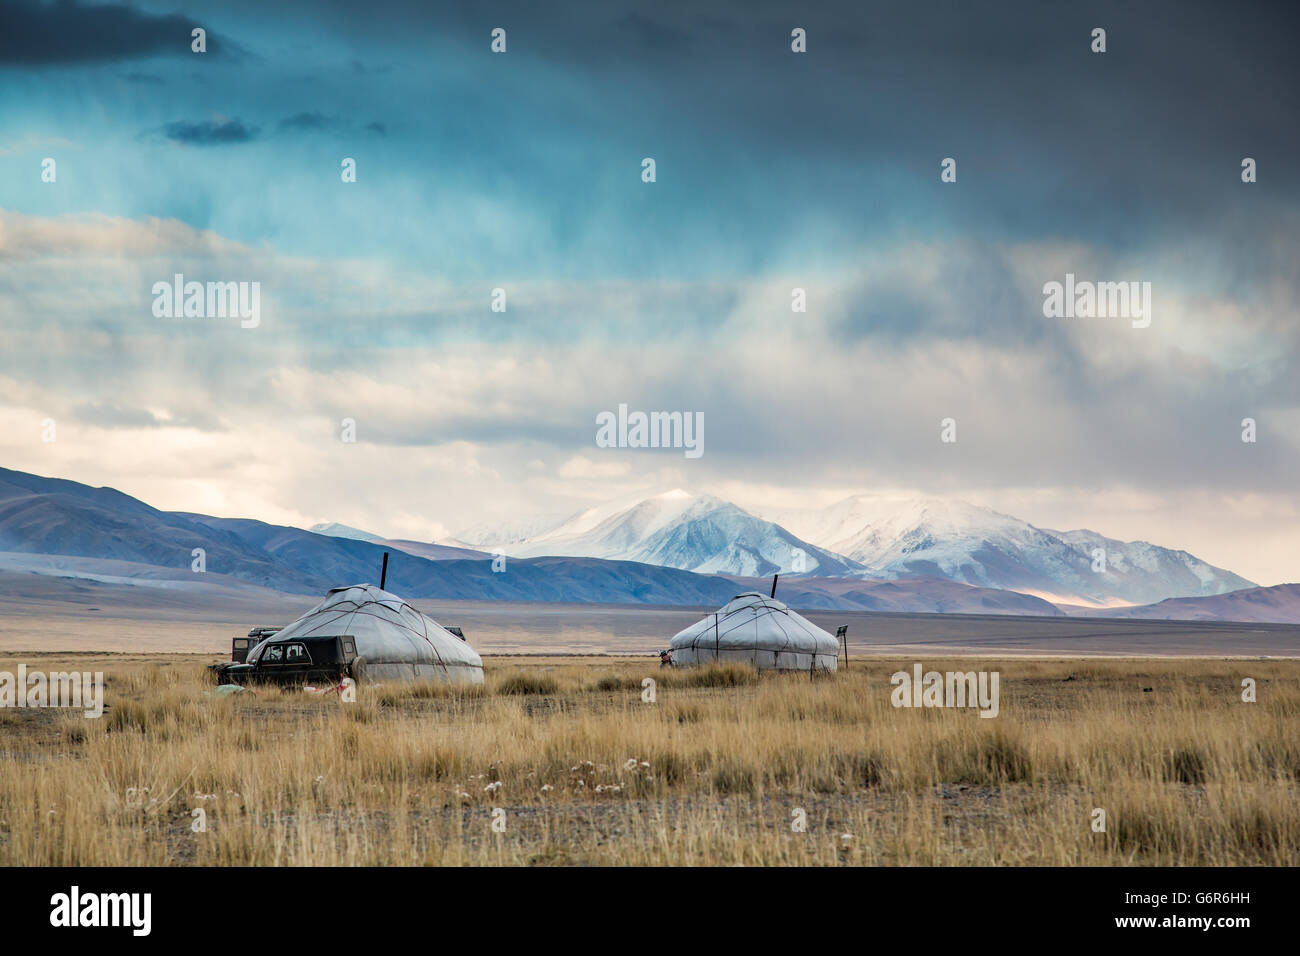 Dos yurts en un paisaje de Mongolia occidental con montañas nevadas en el fondo Foto de stock